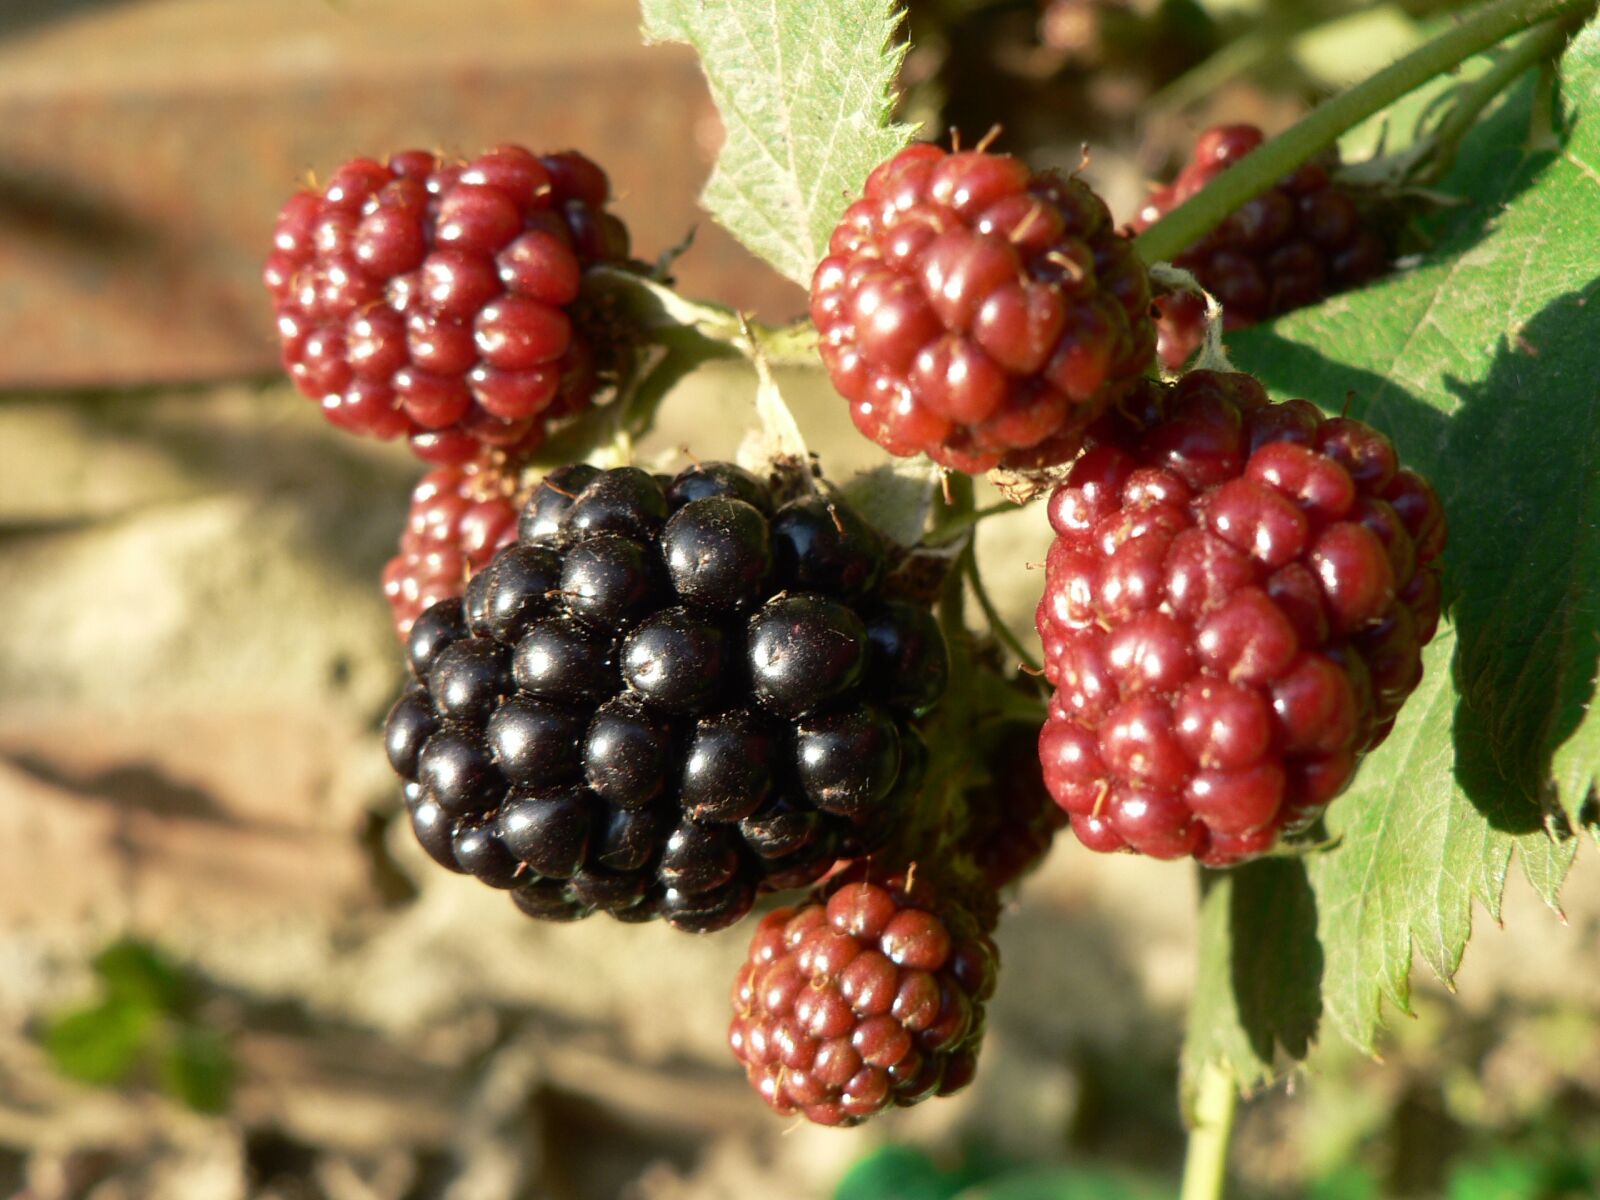 Panasonic DMC-FZ5 sample photo. Blackberry, nature, berries photography